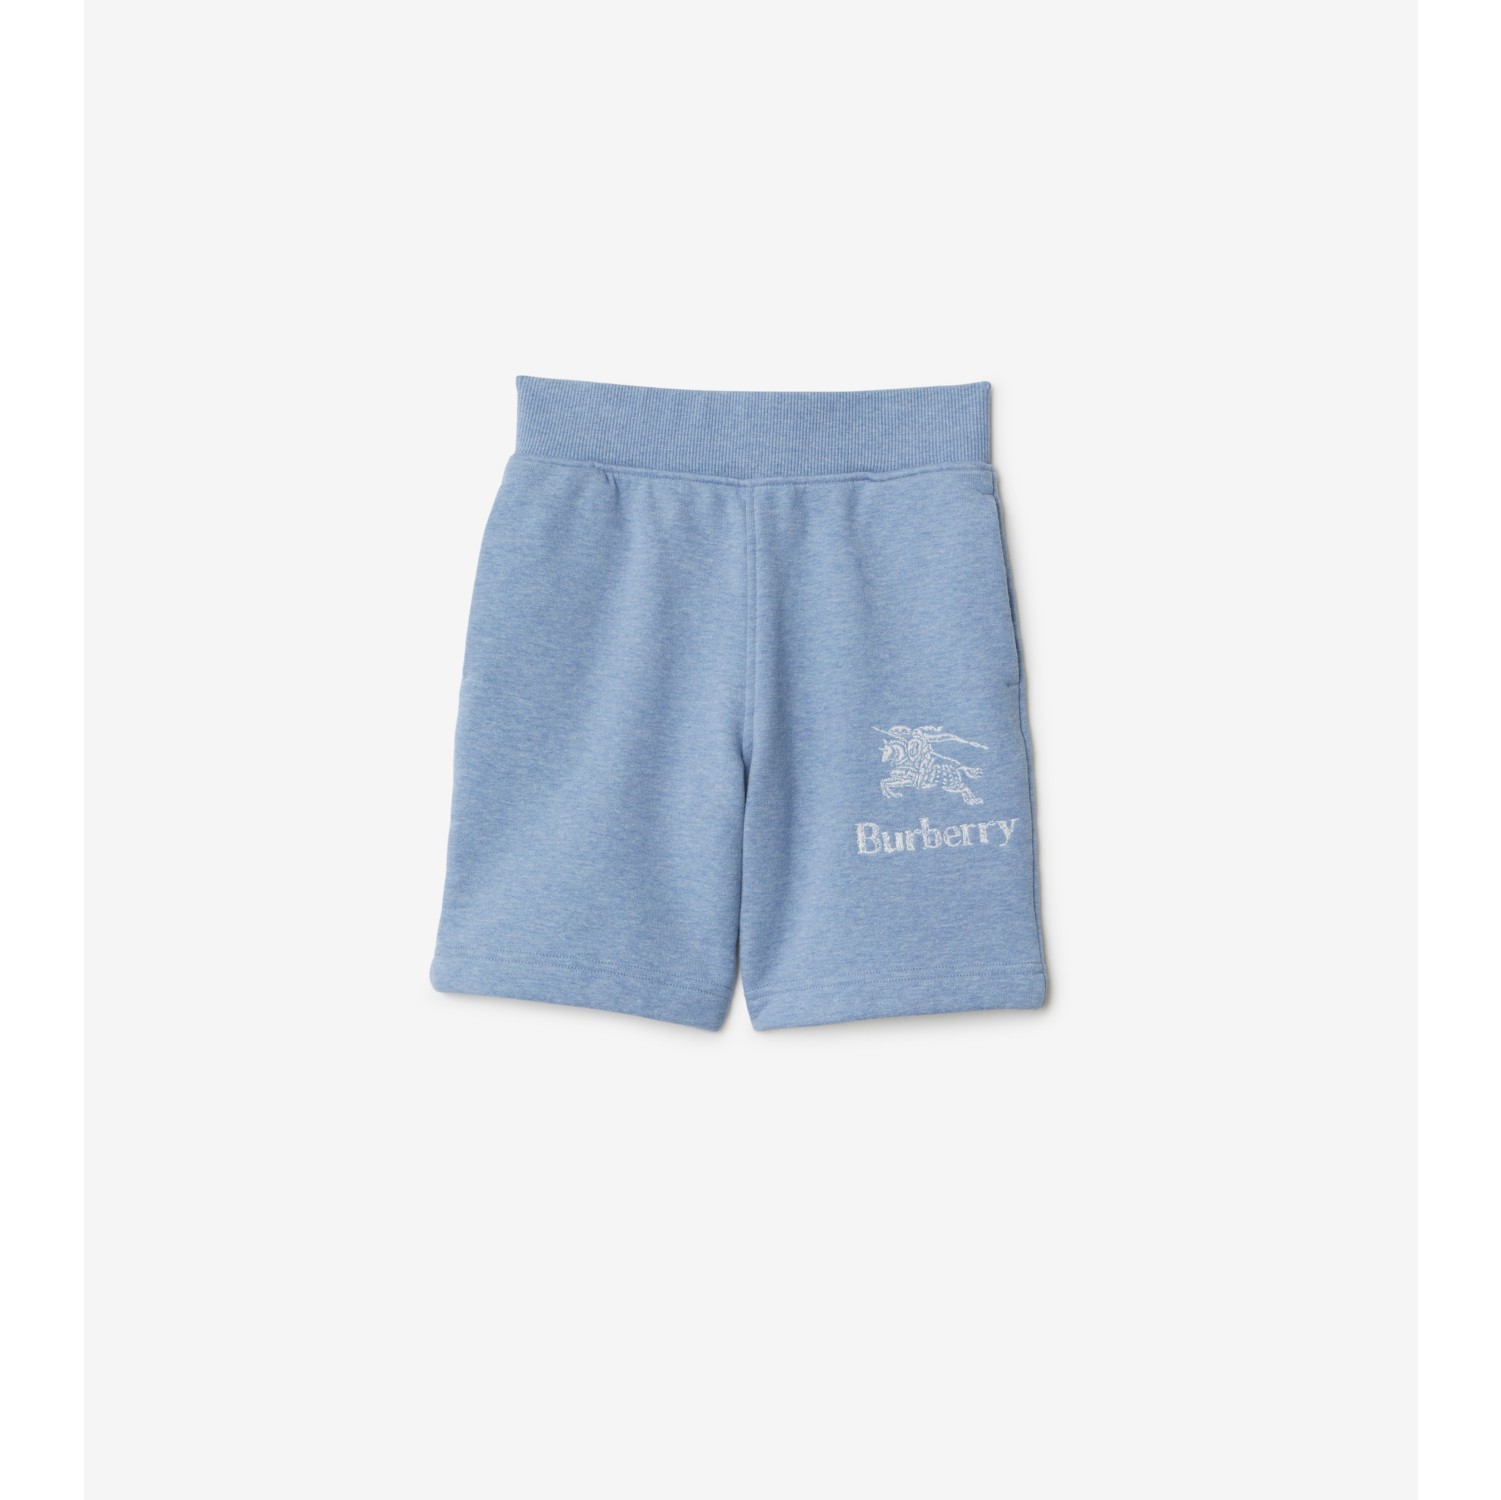 Cotton Shorts in Light blue melange